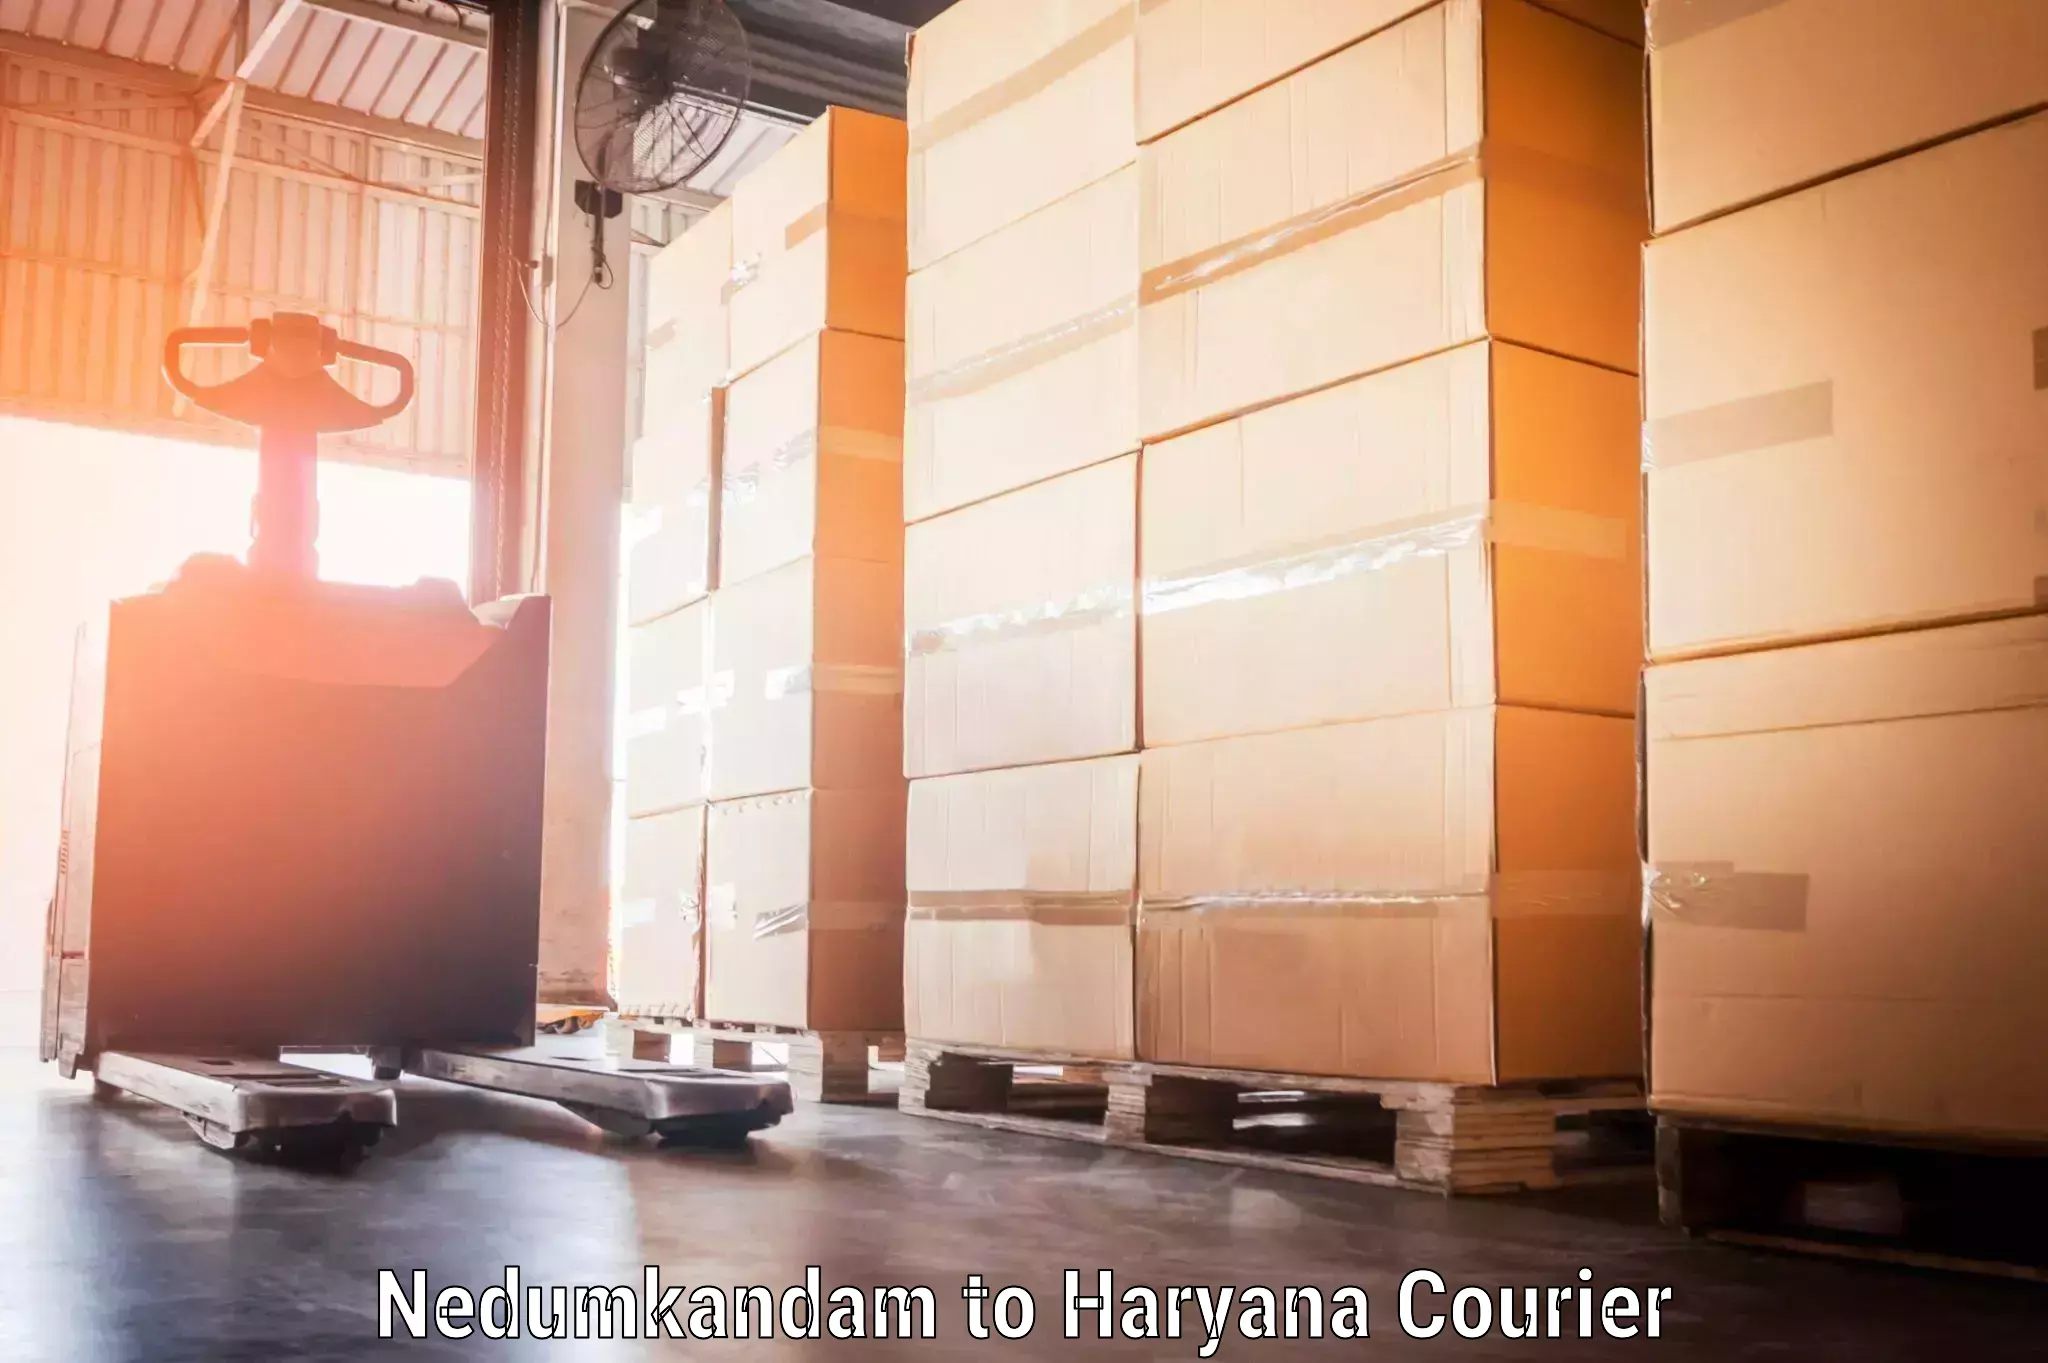 Door-to-door baggage service Nedumkandam to Haryana